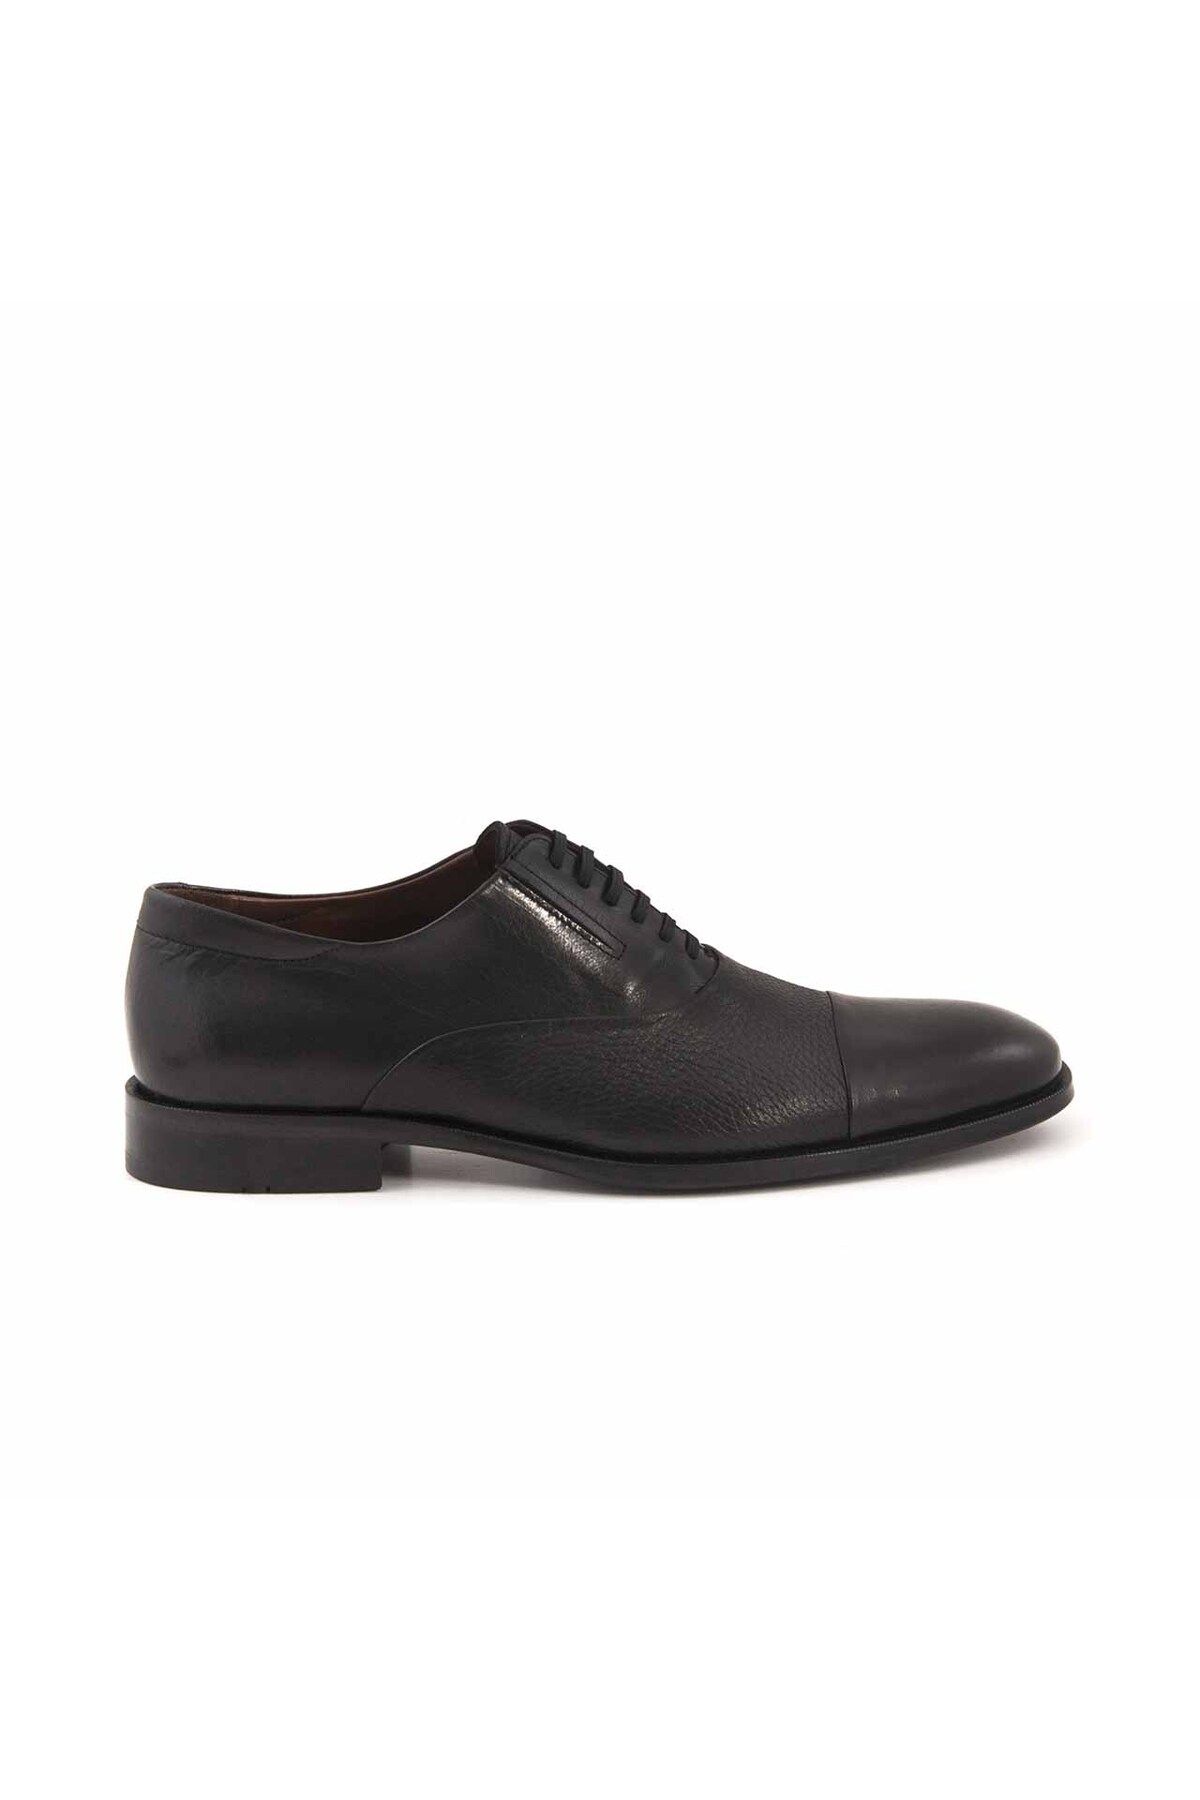 MOCASSINI Deri Bağcıklı Erkek Klasik Ayakkabı 40905